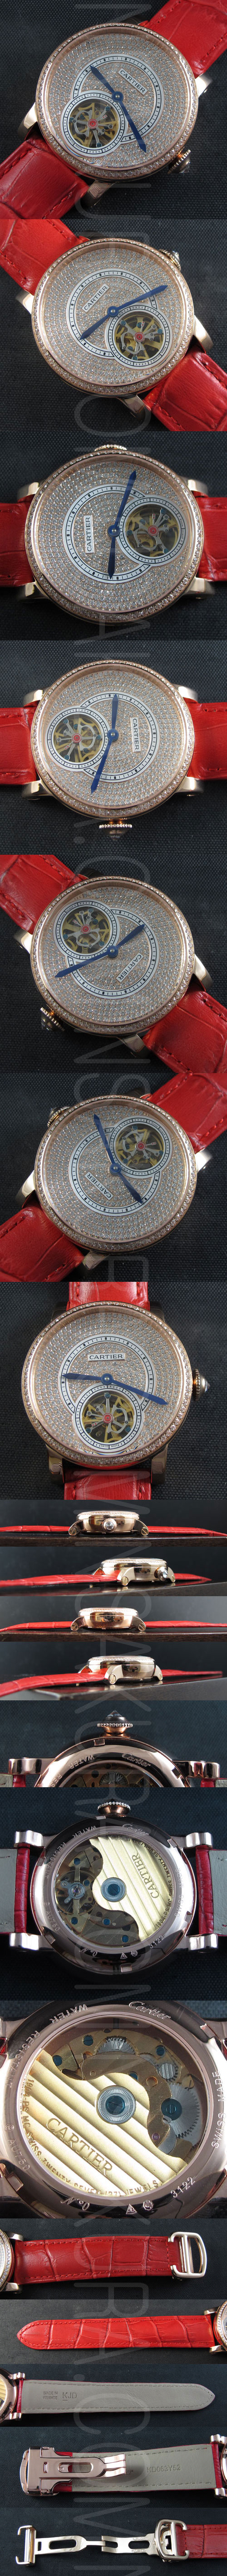 【40mm*15mm】カルティエコピー時計 ロトンド ドゥ カルティエ トゥールビヨン搭載 21600振動